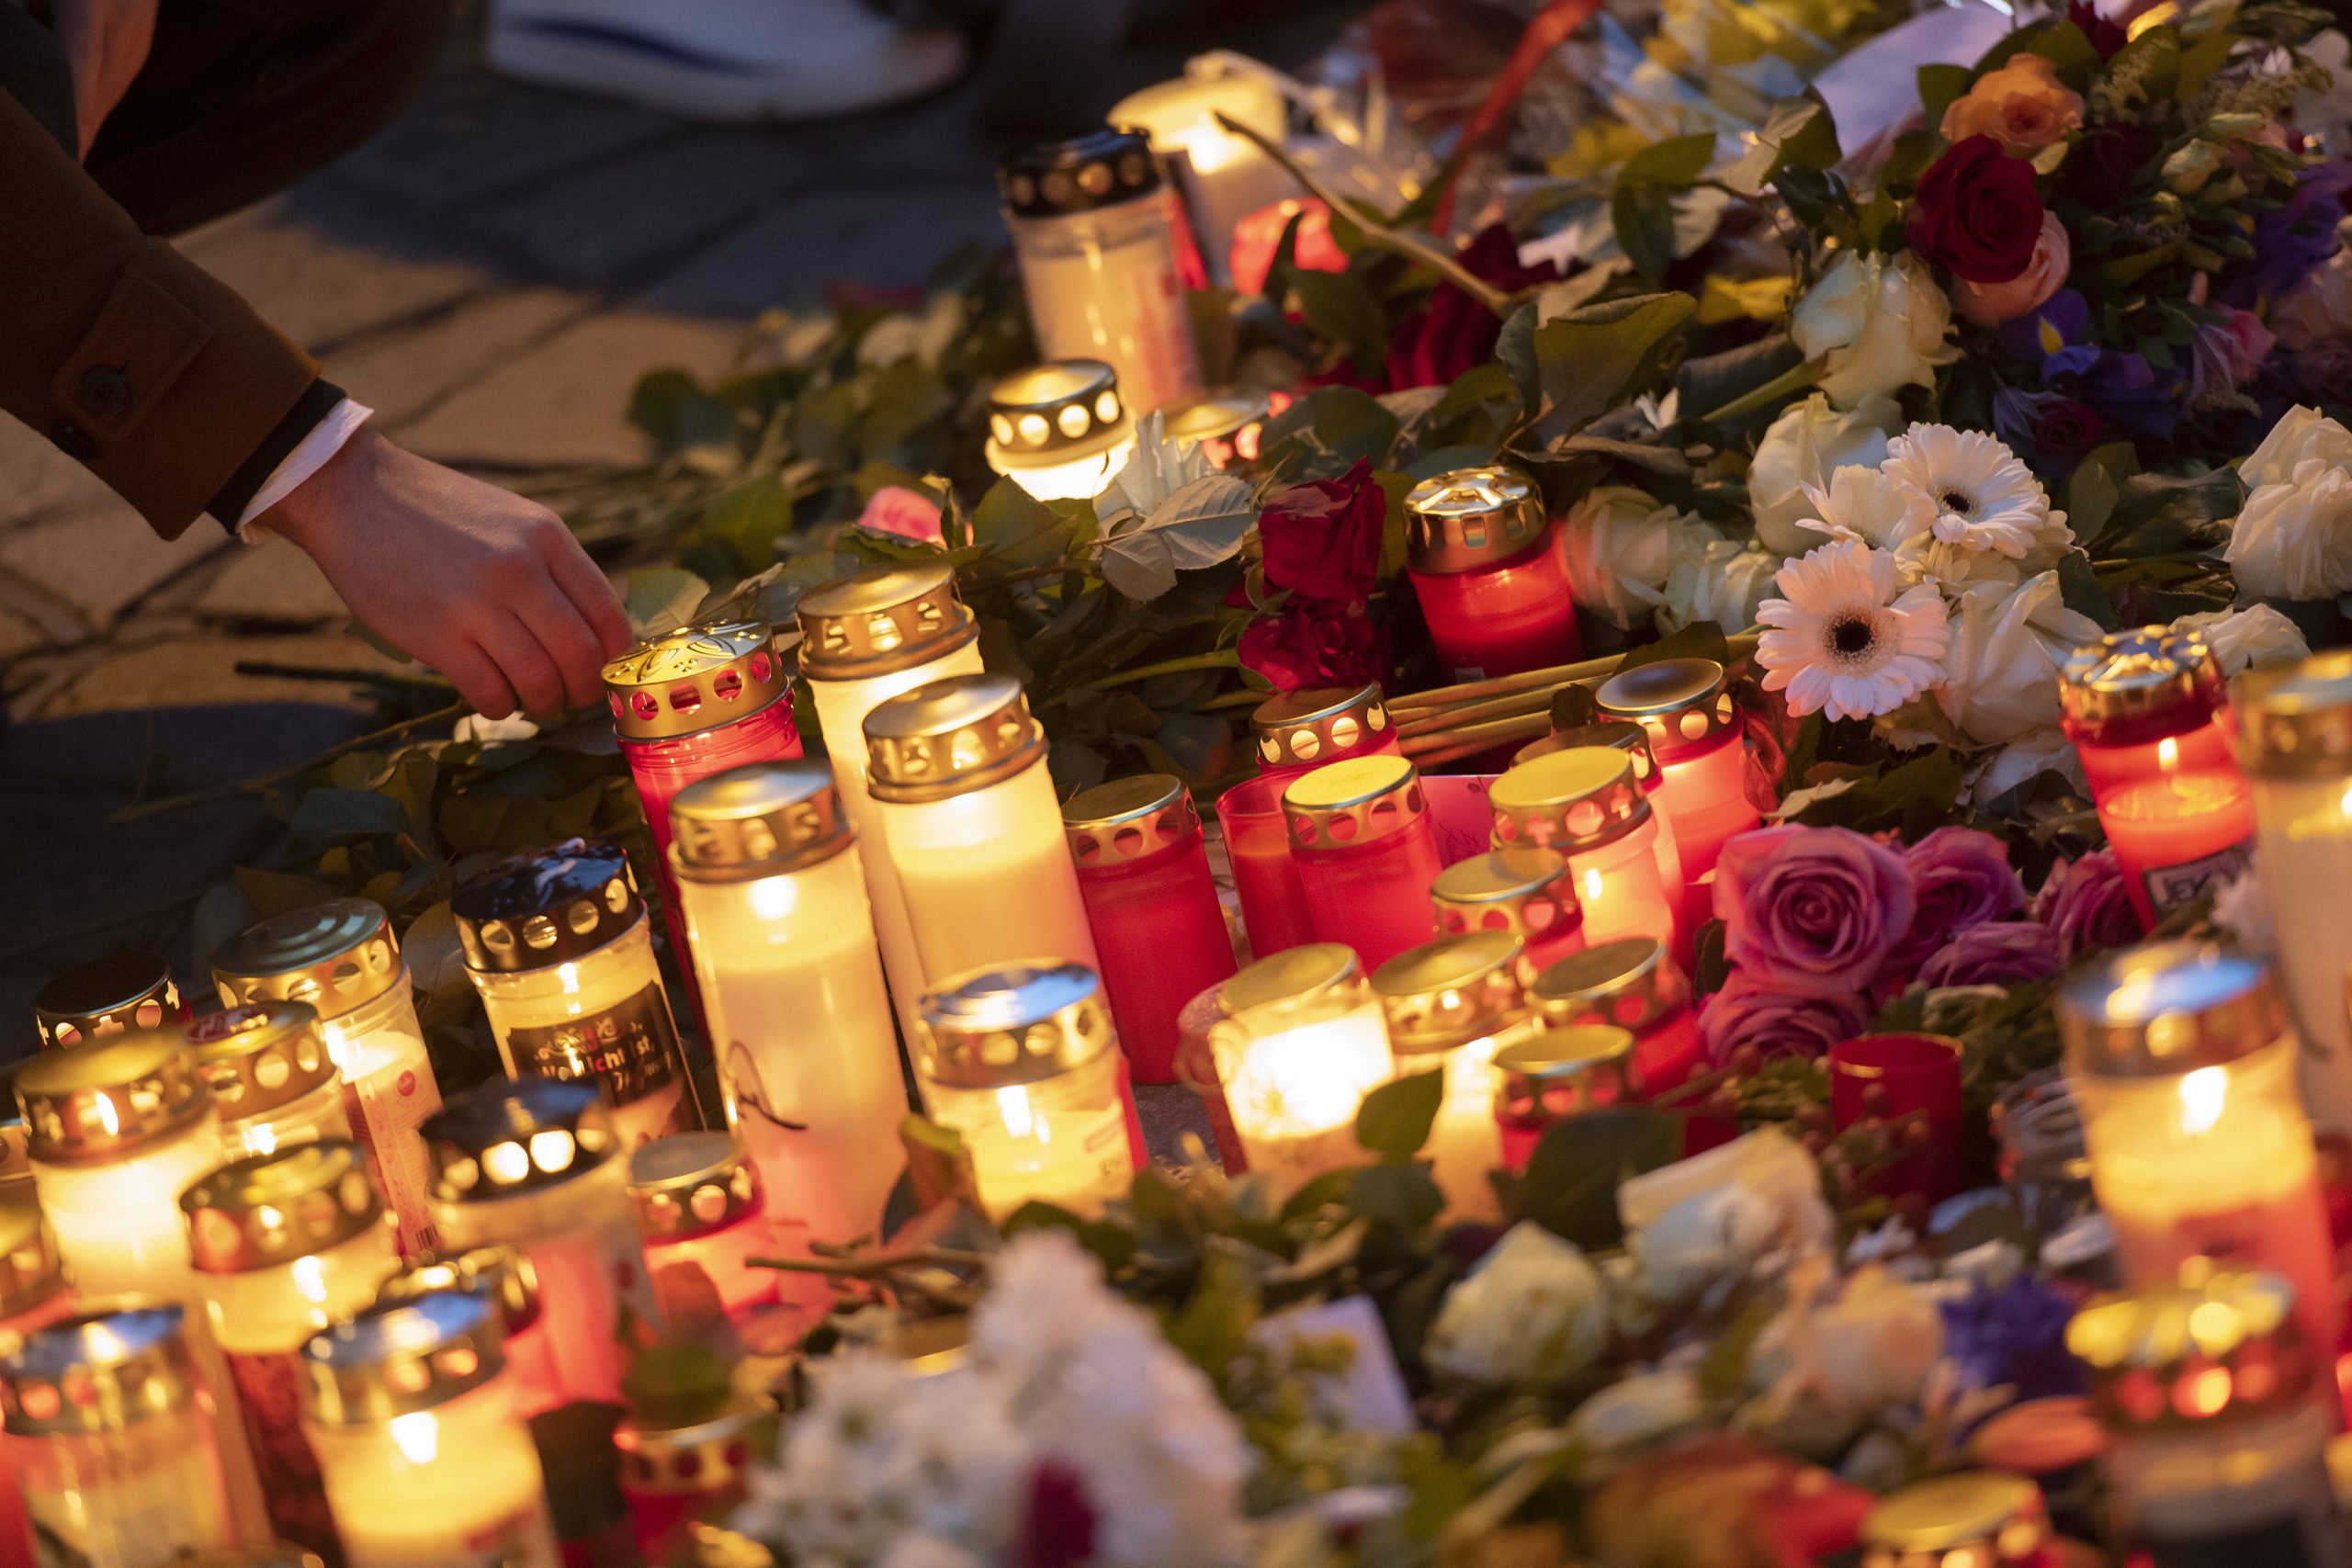 Budapost: Weitere Analysen des Wiener Terrorüberfalls